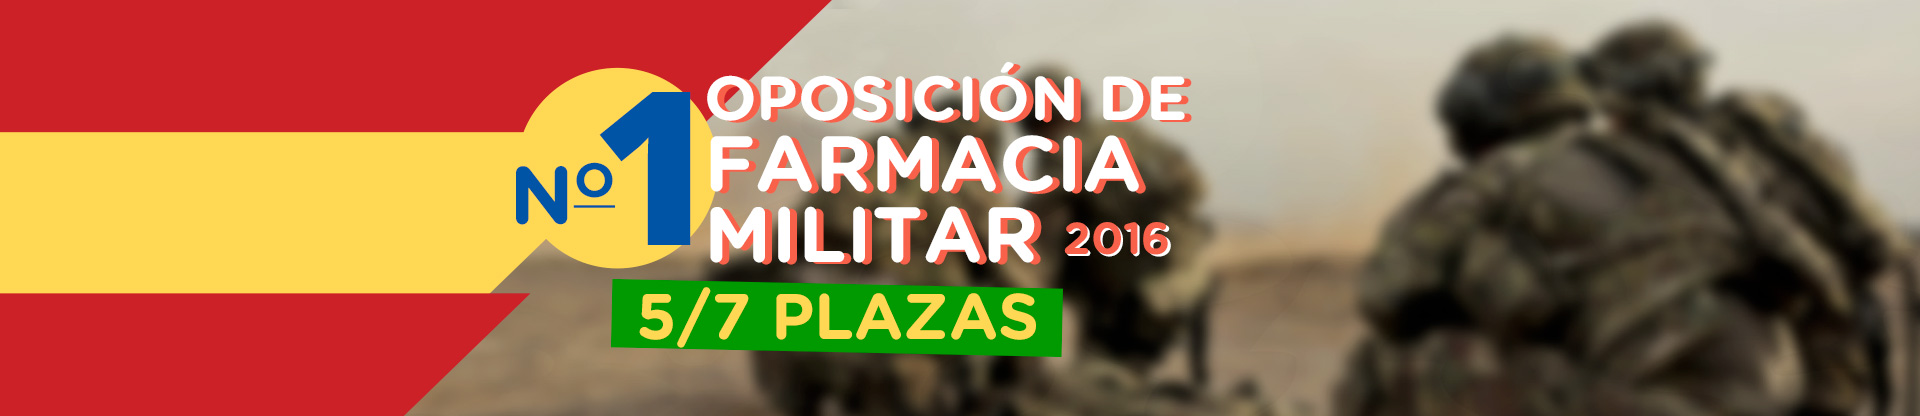 De nuevo número 1 -Oposición Farmacéutico Militar-,  5/7 Plazas y número 1 en todas las pruebas por separado